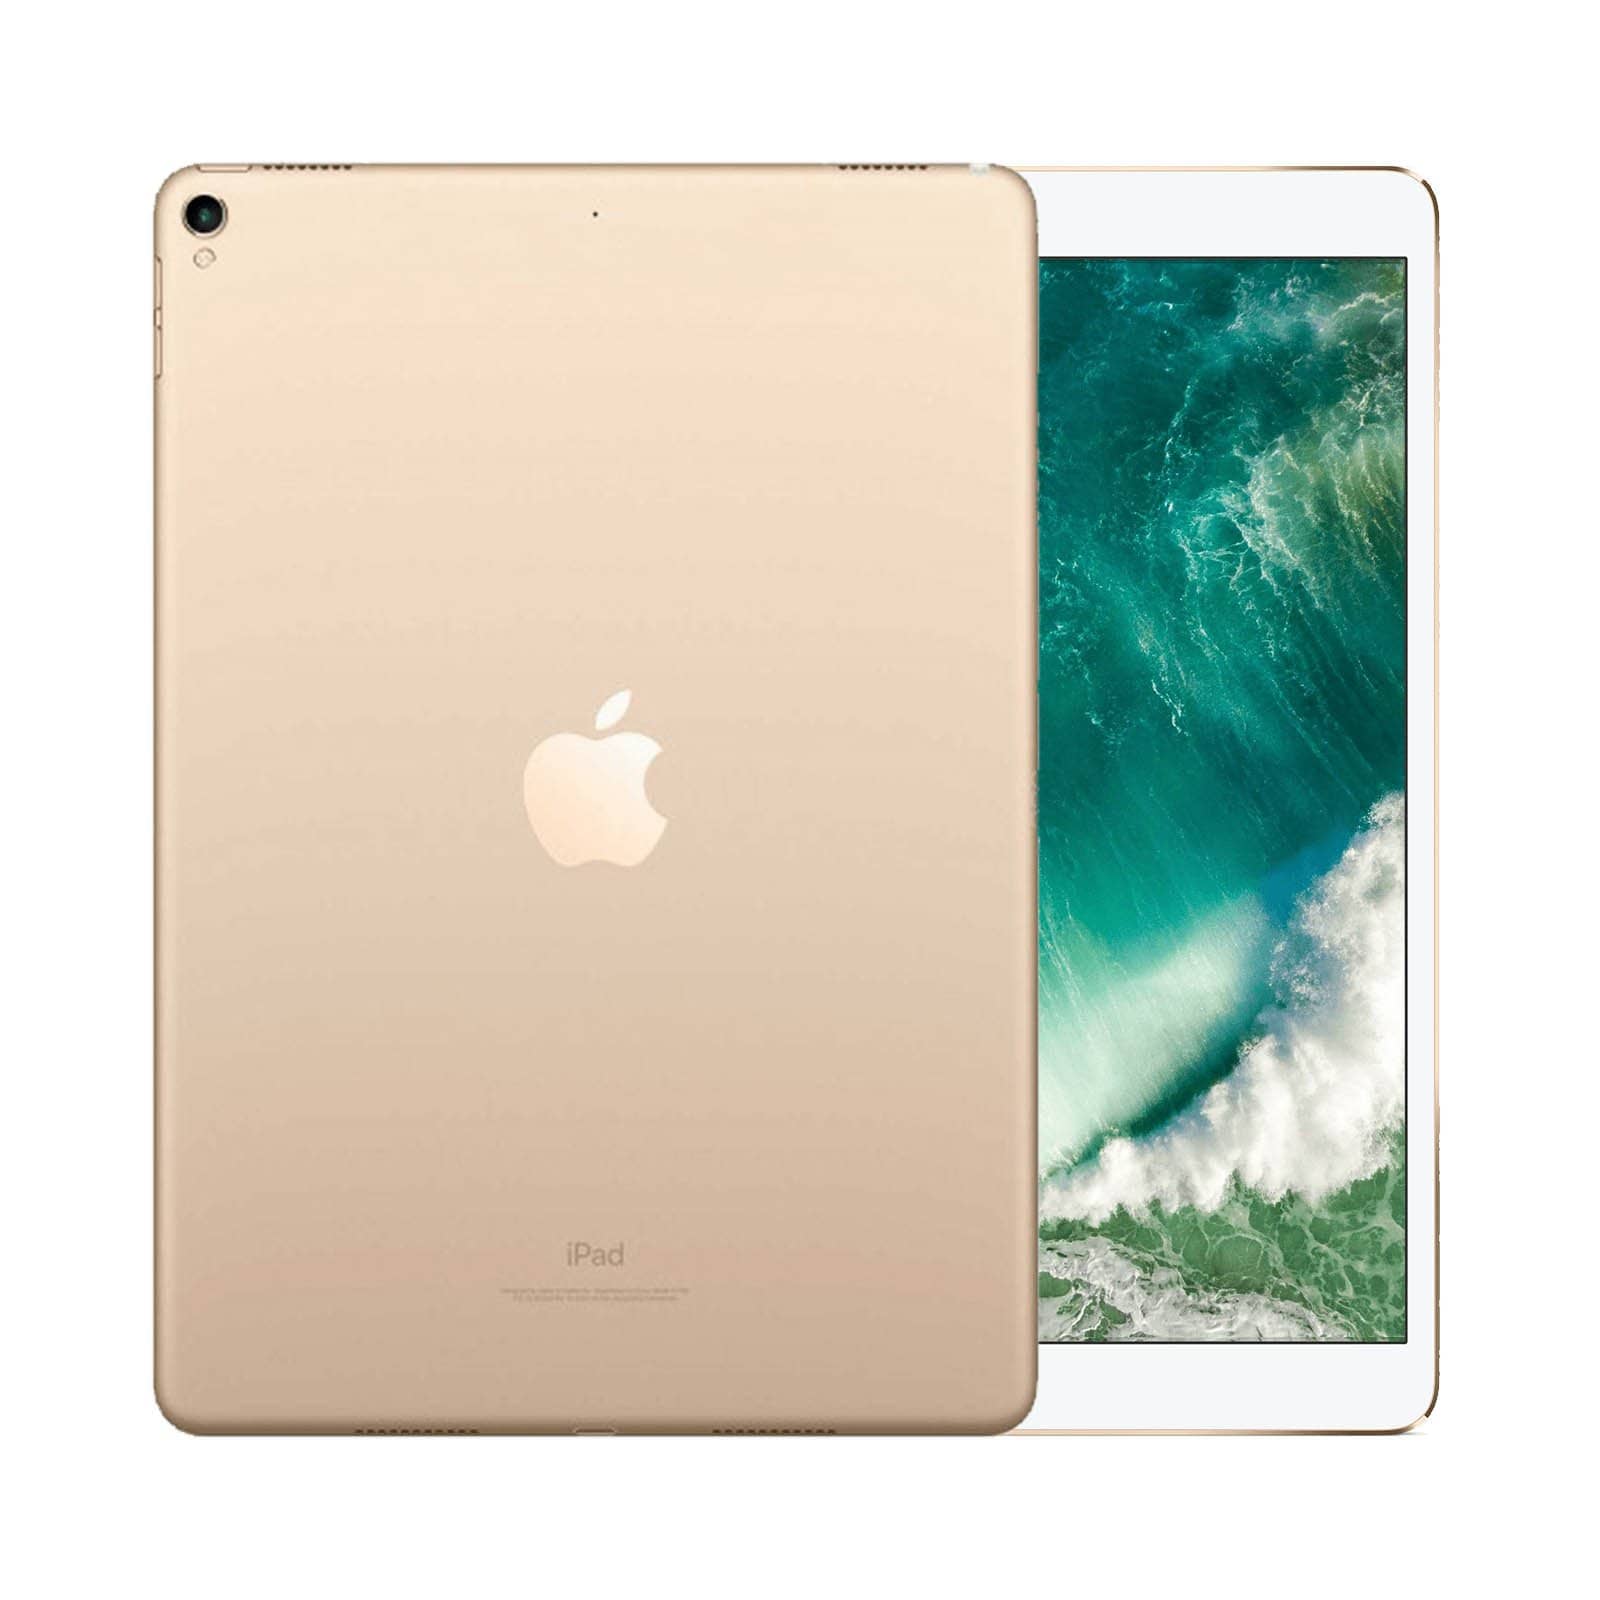 iPad Pro 10.5 Inch 512GB Gold Pristine - WiFi 512GB Gold Pristine